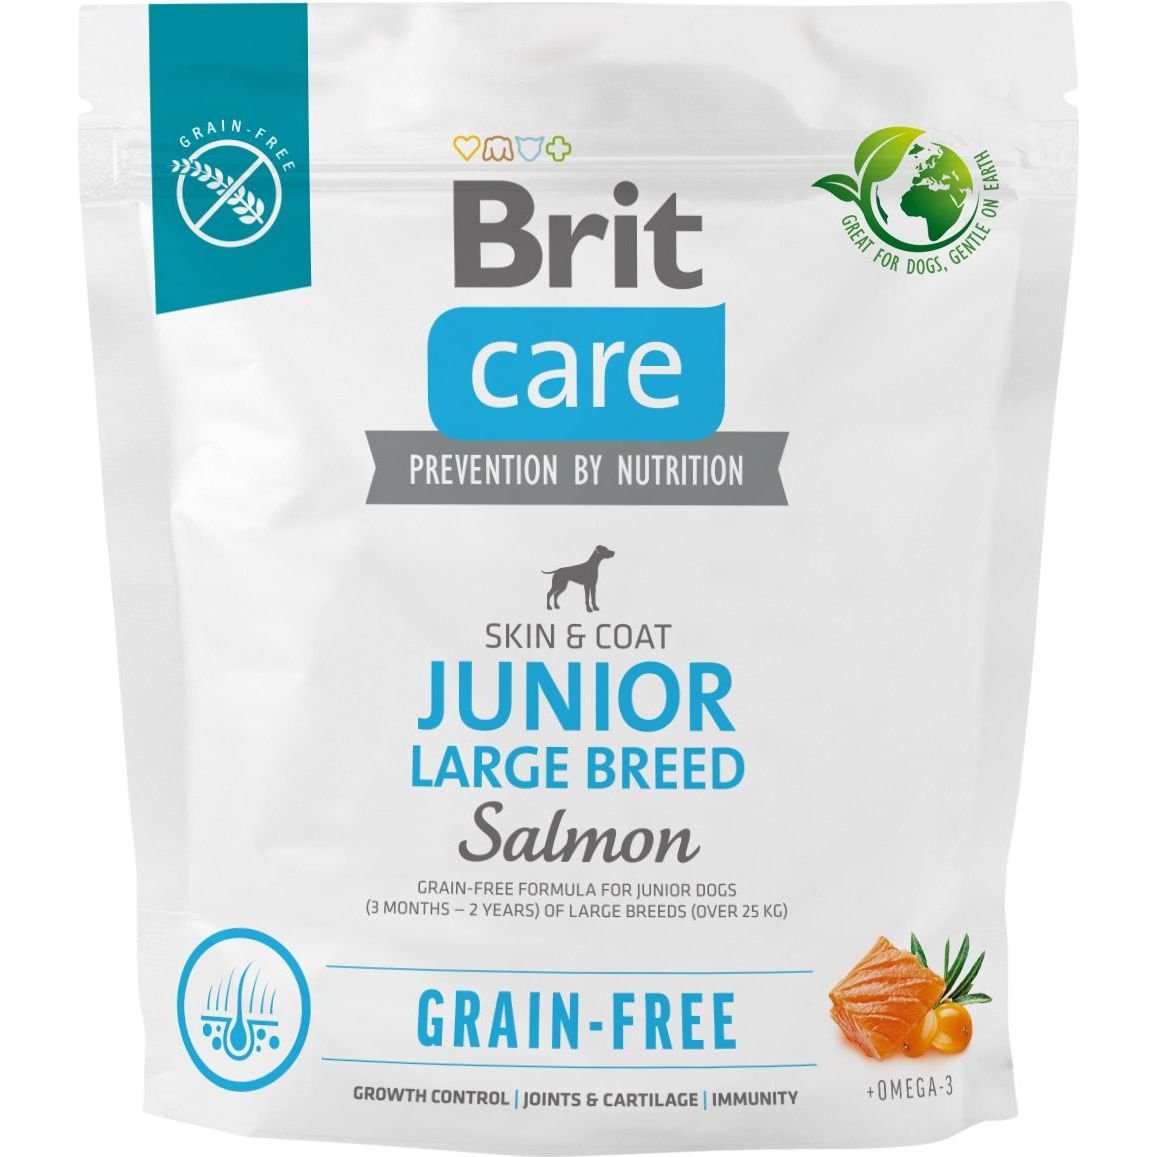 Сухой беззерновой корм для молодых собак крупных пород Brit Care Dog Grain-free Junior Large Breed, с лососем, 1 кг - фото 1